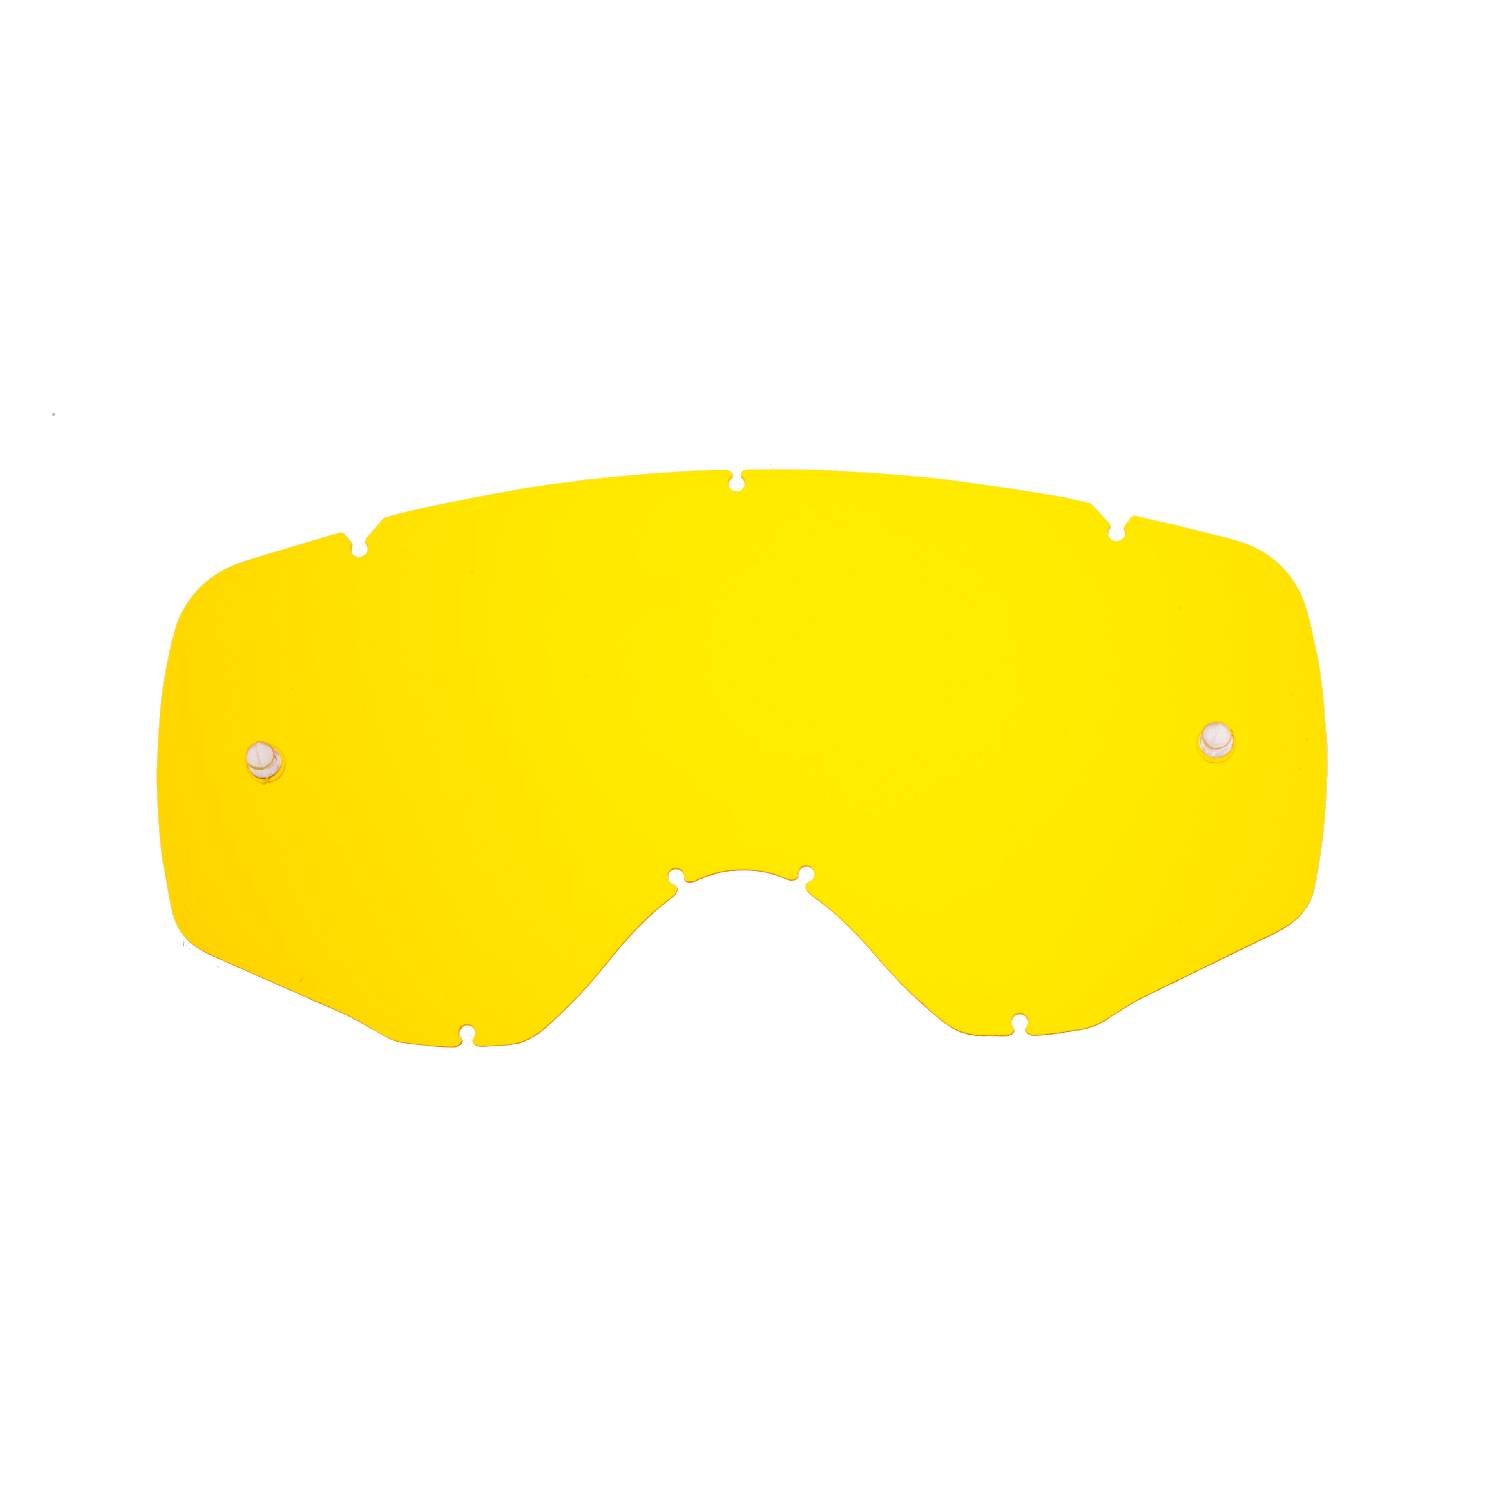 SeeCle SE-41V234-HZ gelbe gl盲ser f眉r Brillen kompatibel zu Ethen Zerosei Maske von SeeCle